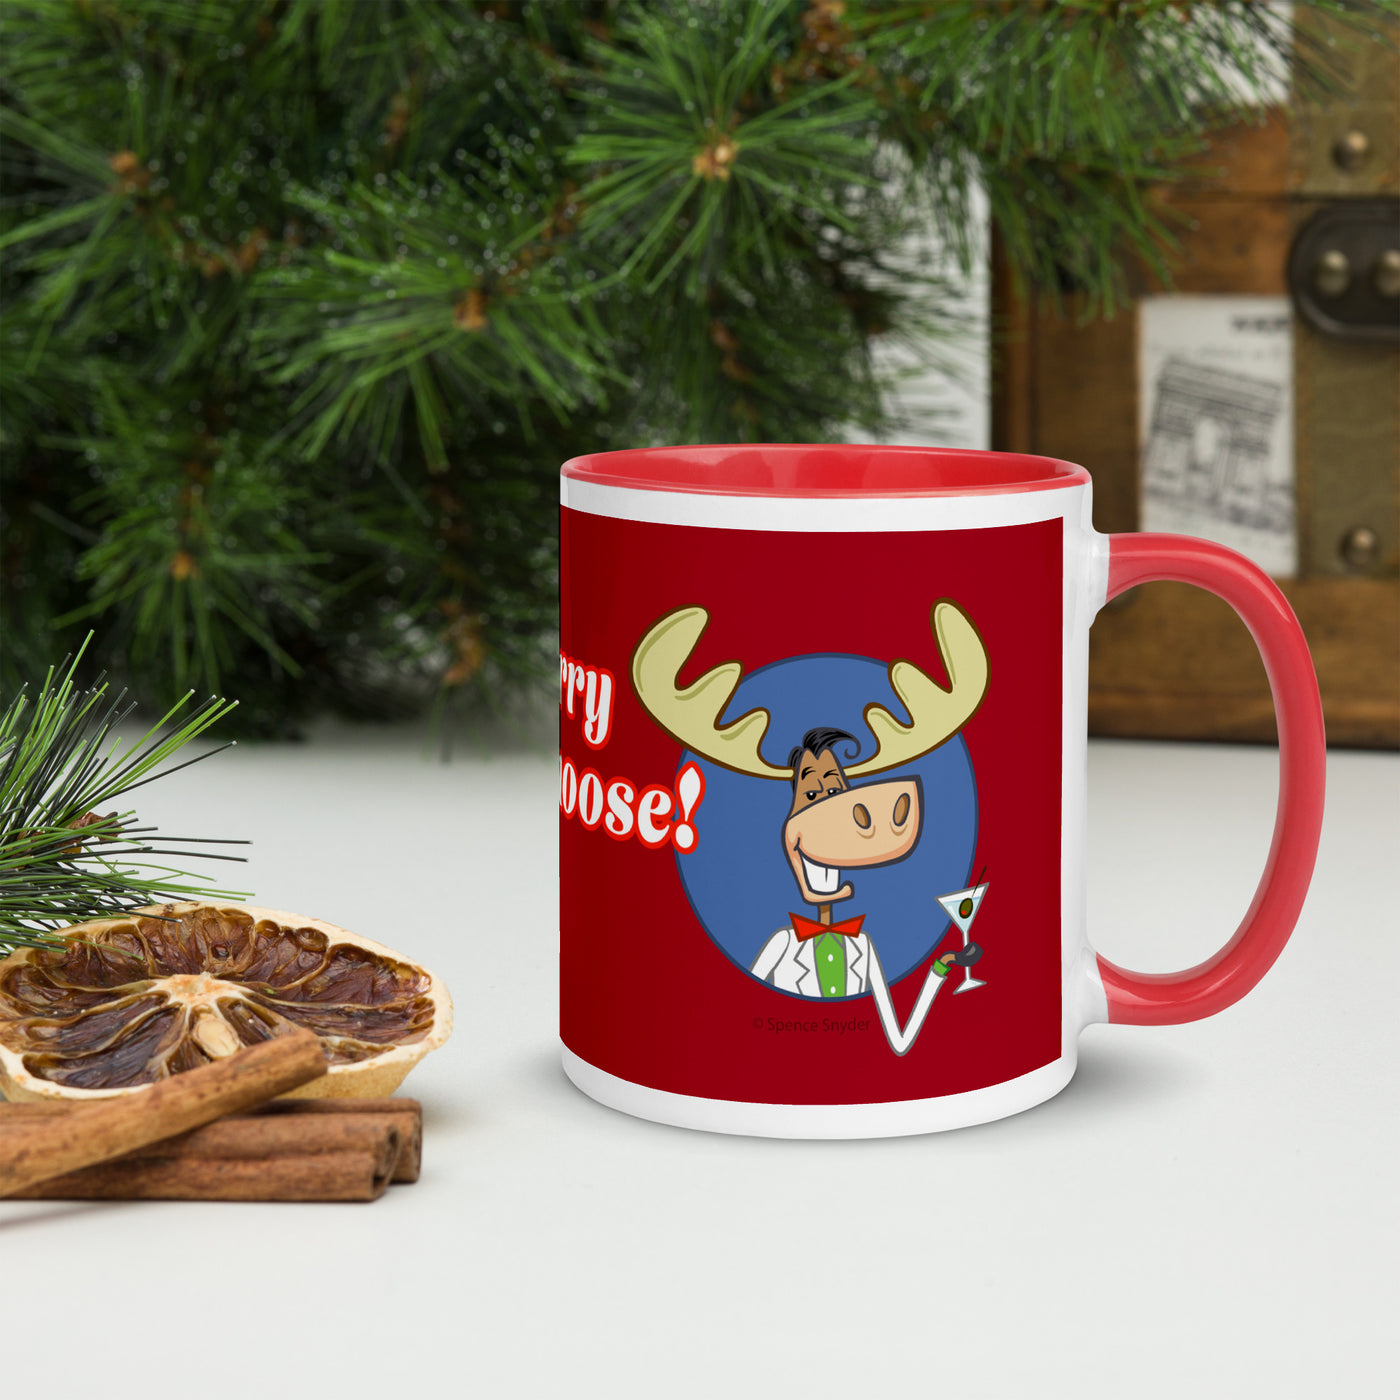 Merry Chrismoose! Mug